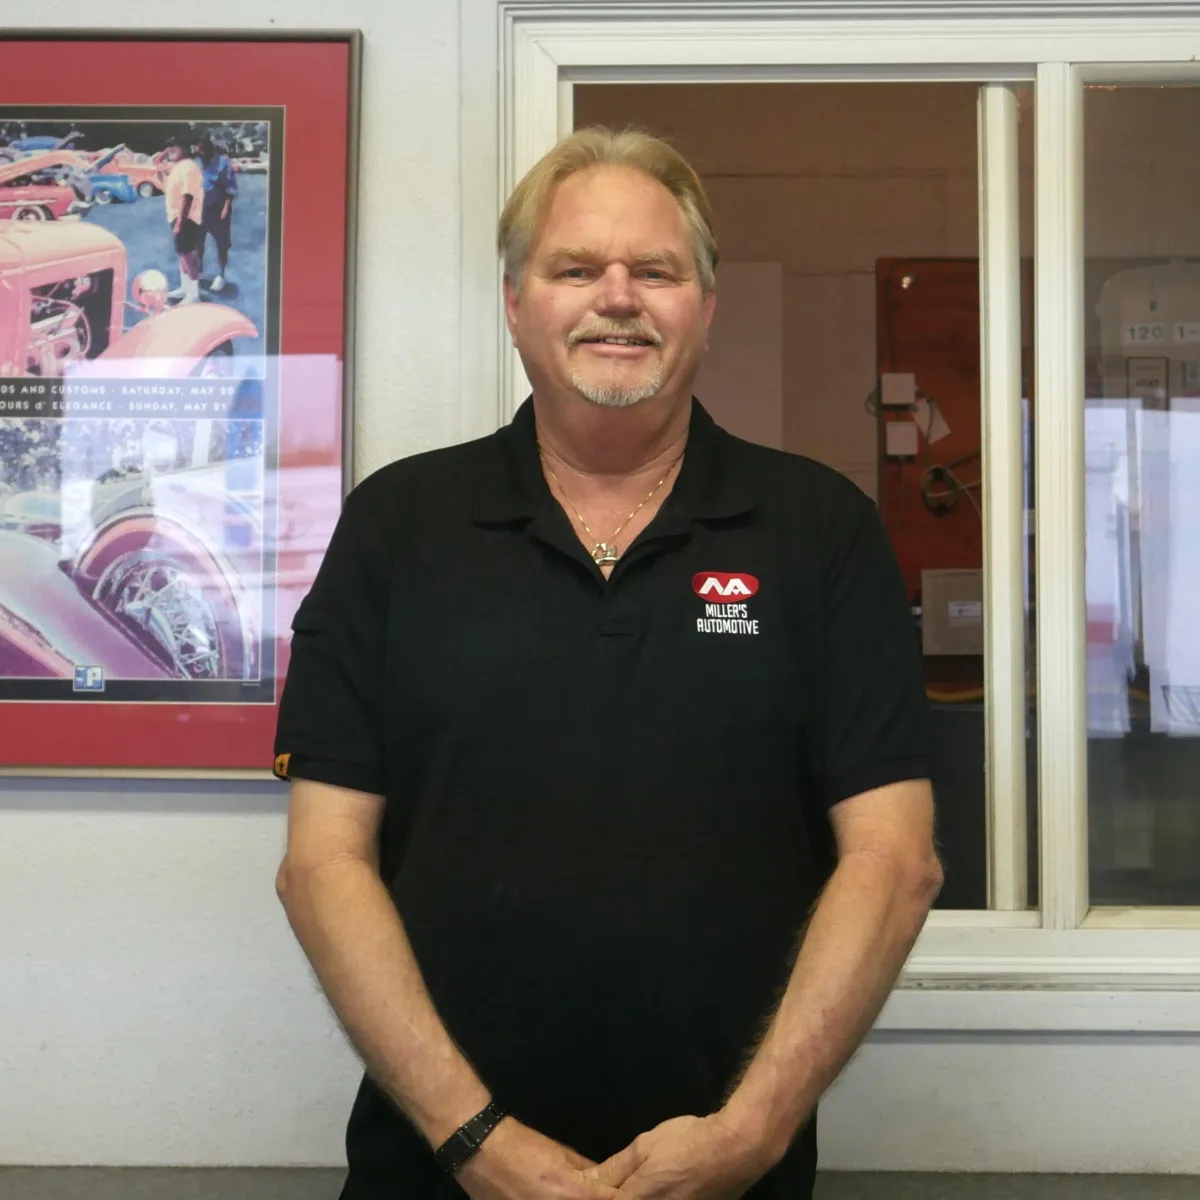 Derrick van den Hurk Owner/Manager of Miler's Automotive